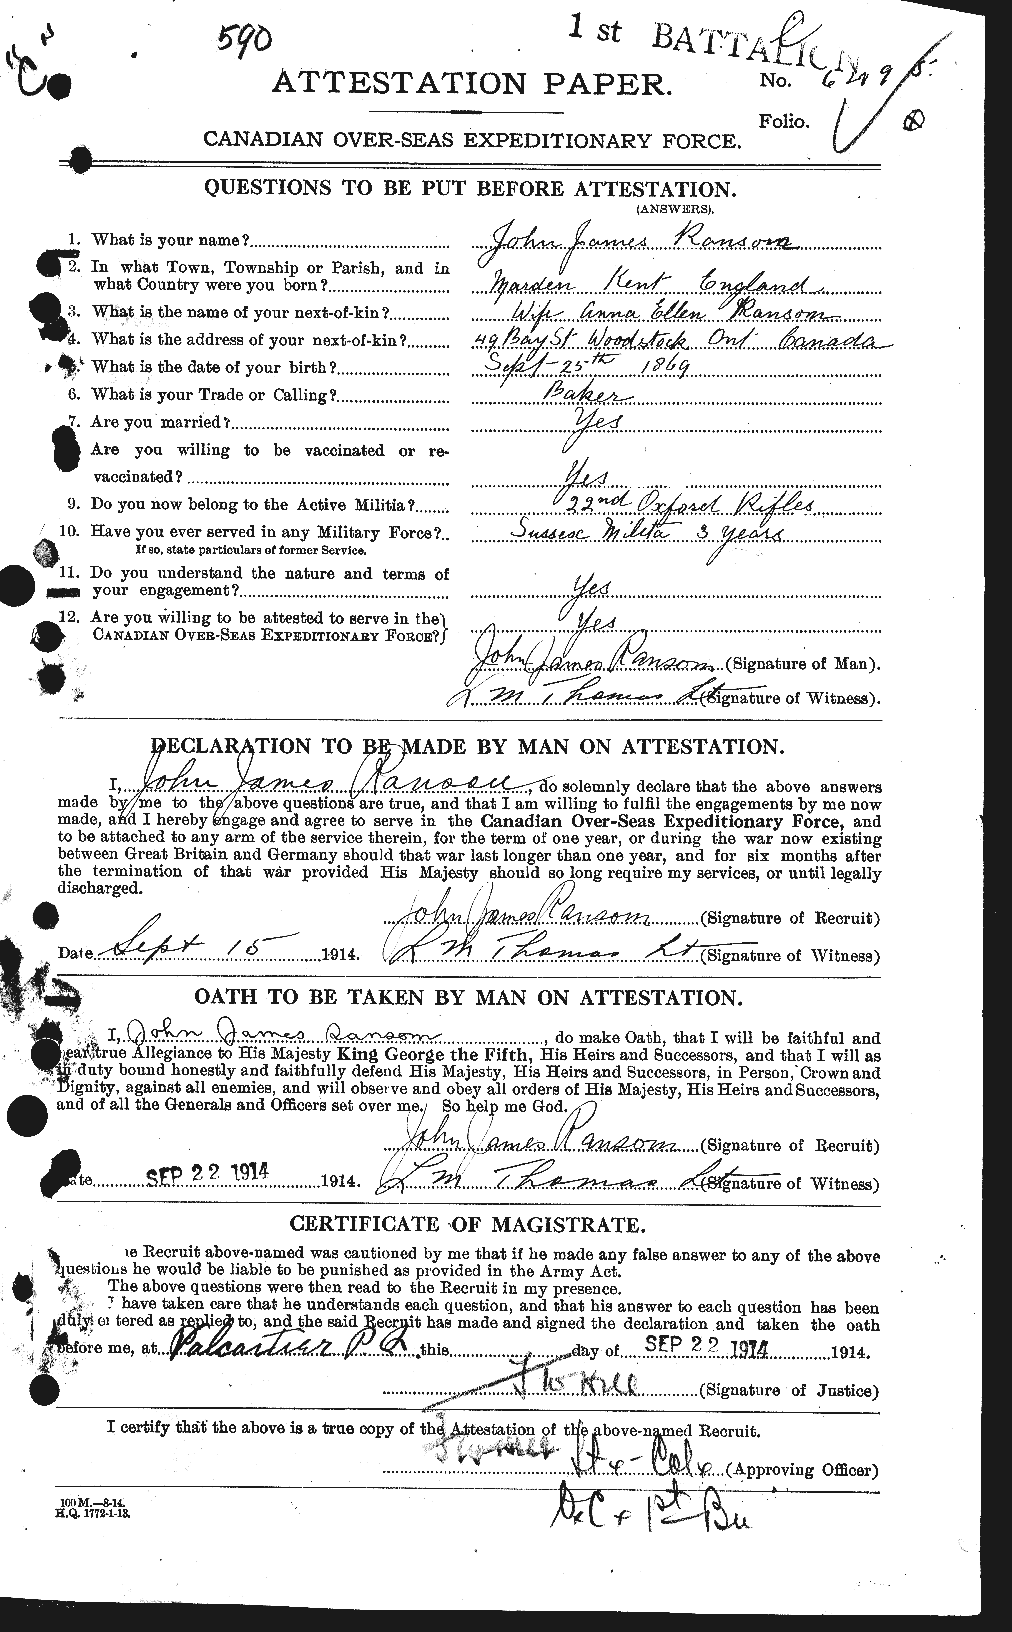 Dossiers du Personnel de la Première Guerre mondiale - CEC 594890a